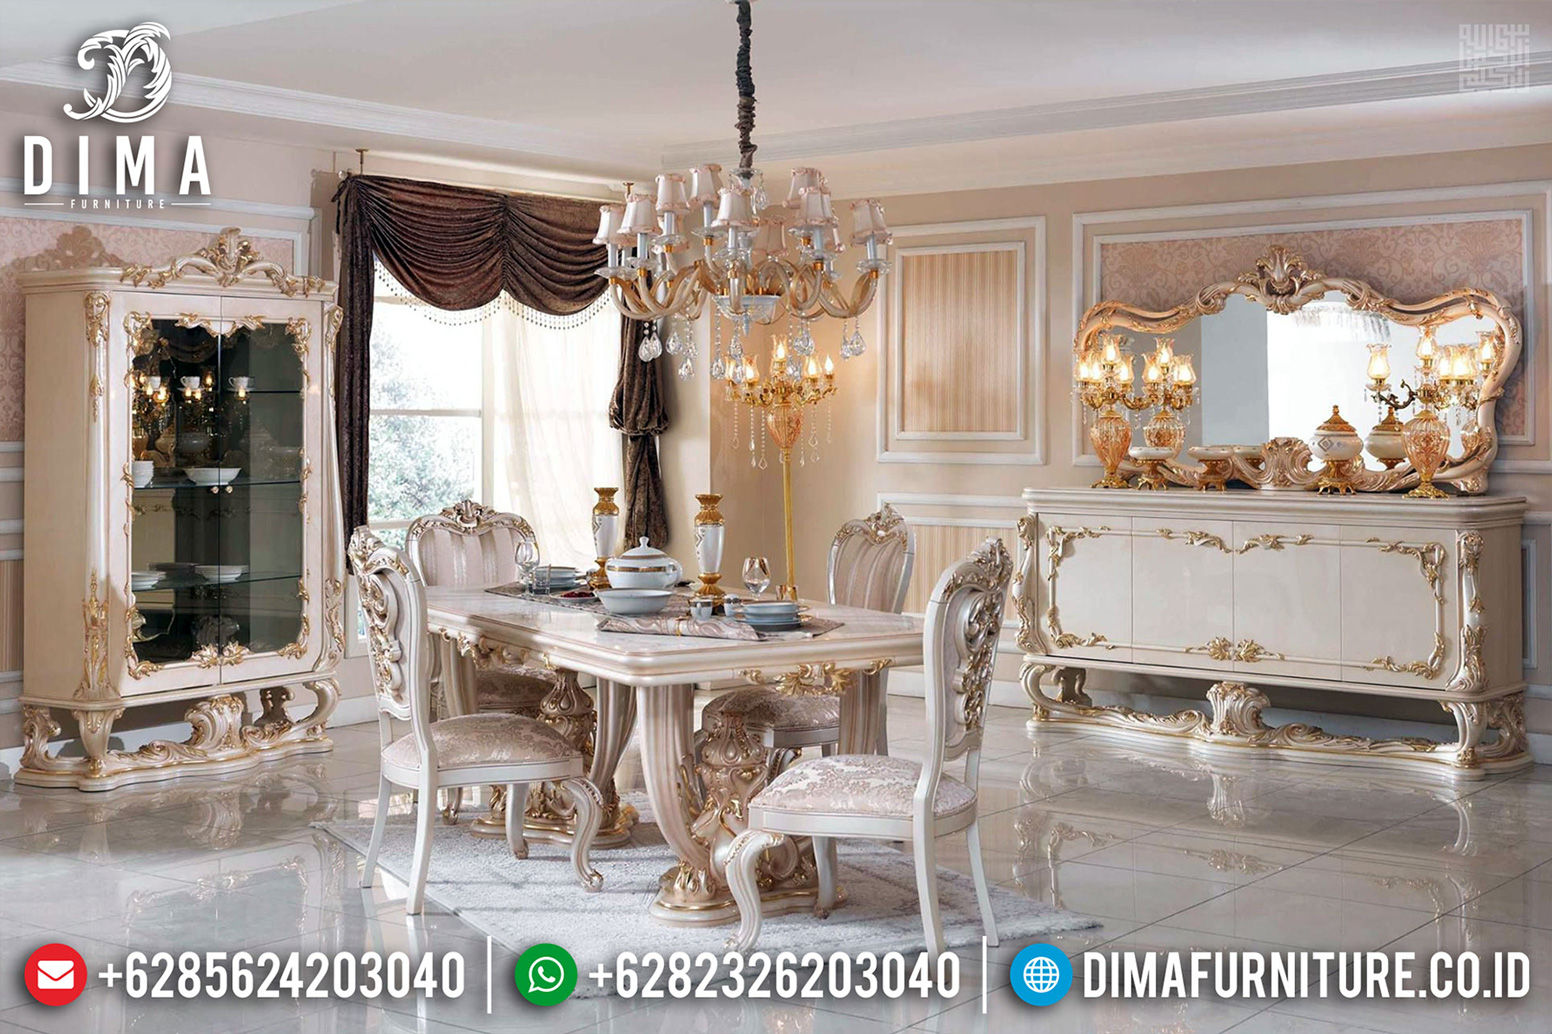 Luxury Design Interior Meja Makan Mewah Jepara Italian Carving Style MMJ-0500